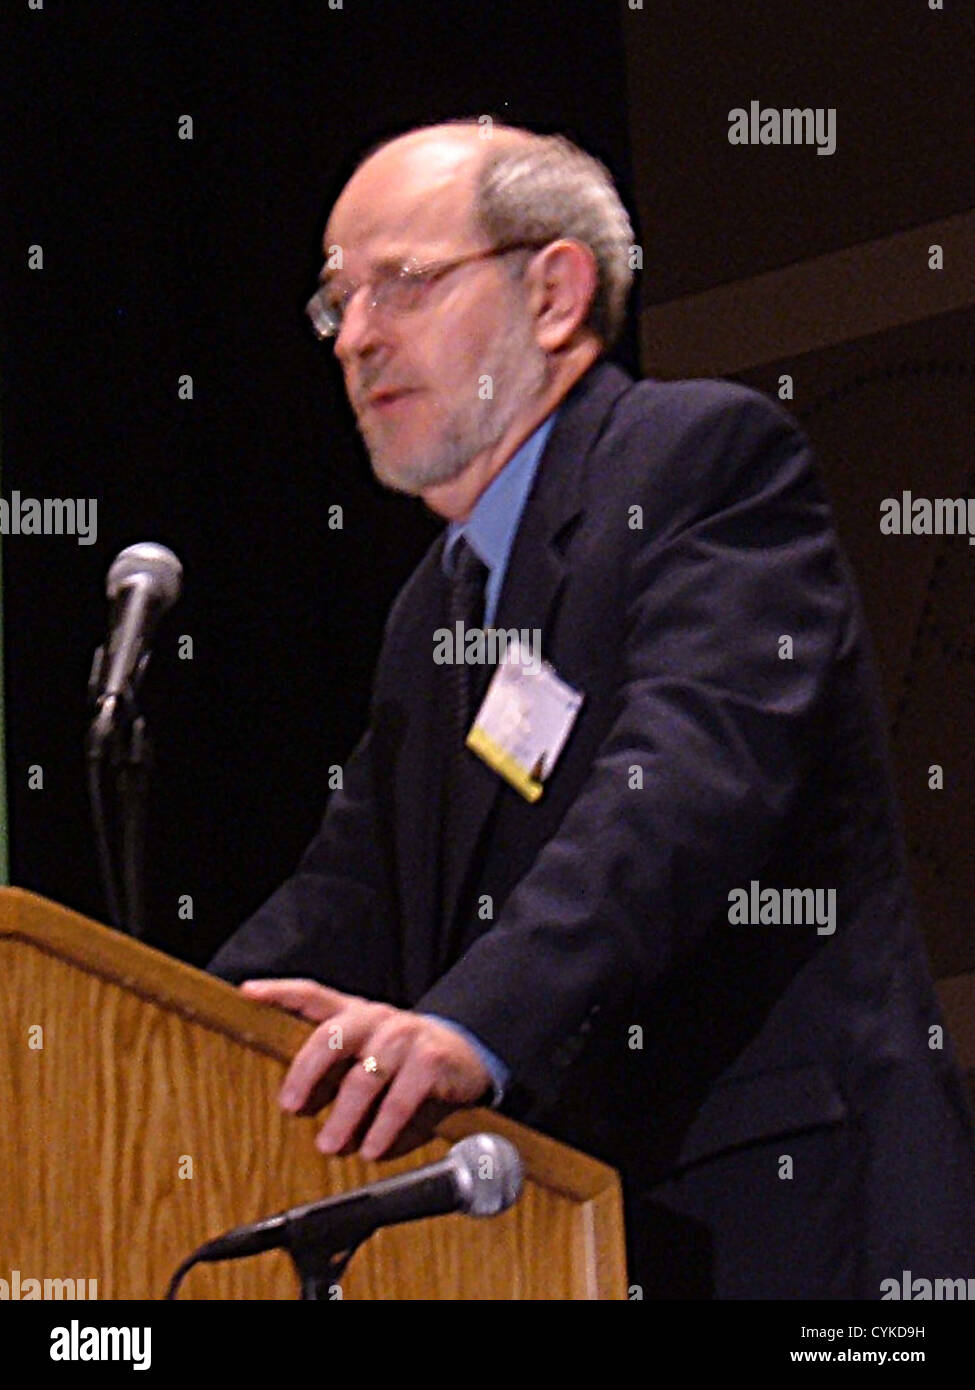 Ronald G. Douglas, Distinguished Professor in der Fakultät für Mathematik an der Texas A & M Universität. Fotografiert im Legacy Stockfoto